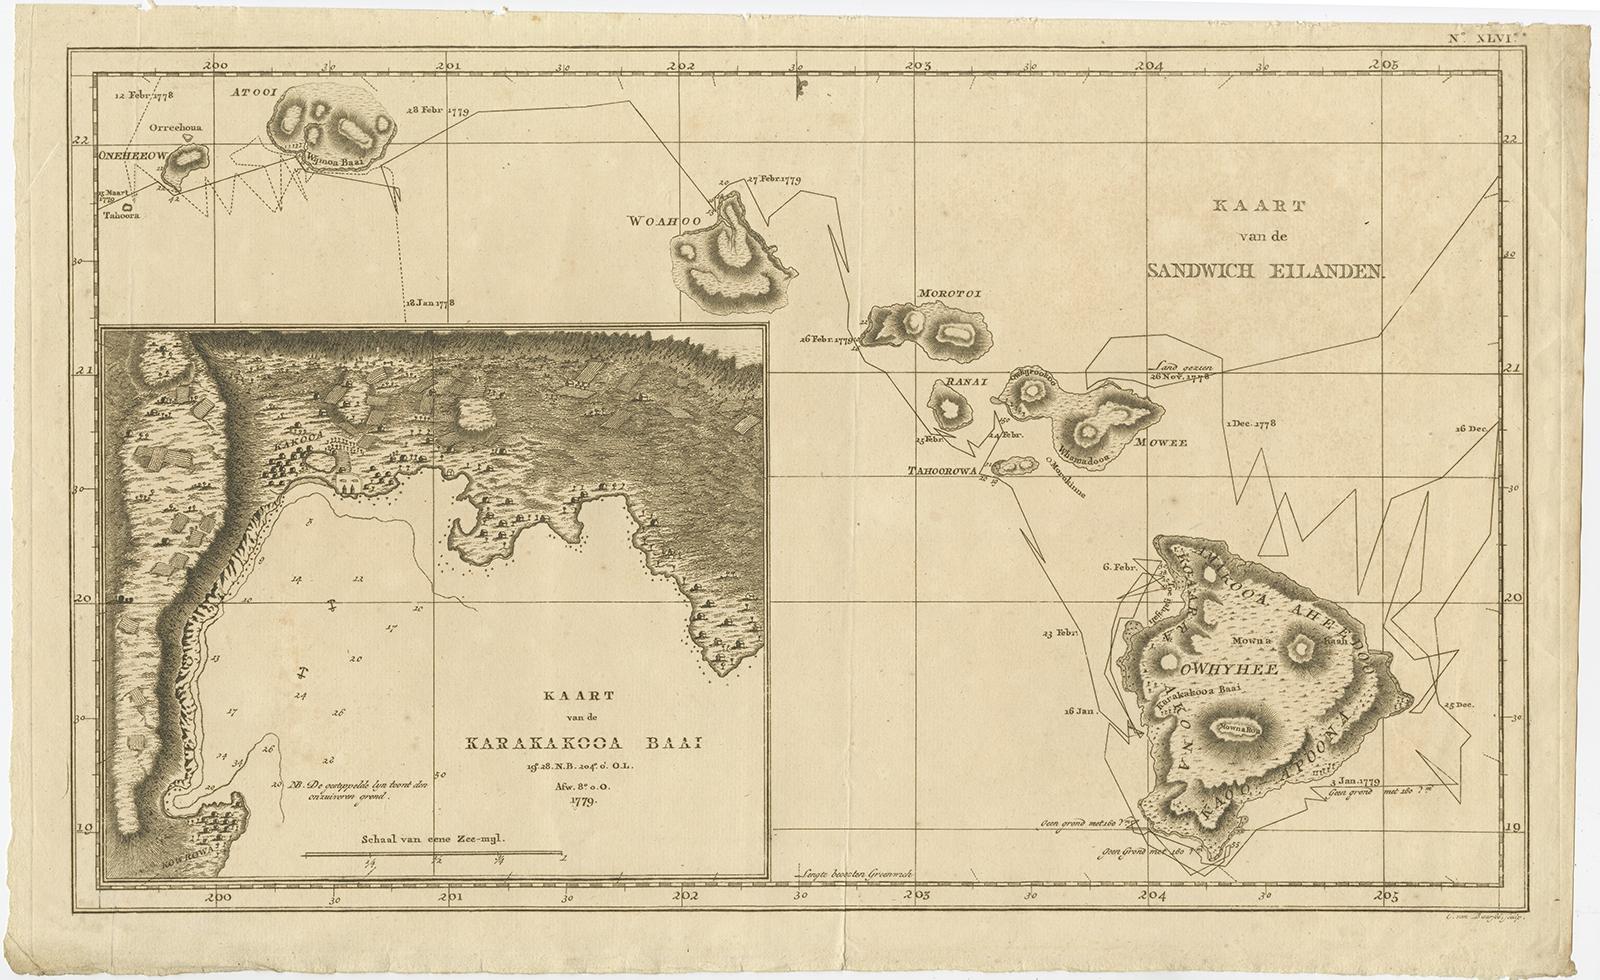 Antike Karte mit dem Titel 'Kaart van de Sandwich Eilanden'. 

Karte der Hawaii-Inseln mit einem großen Ausschnitt der Karakakooa-Bucht, einschließlich Sondierungen und Ankerplätzen. Stammt aus 